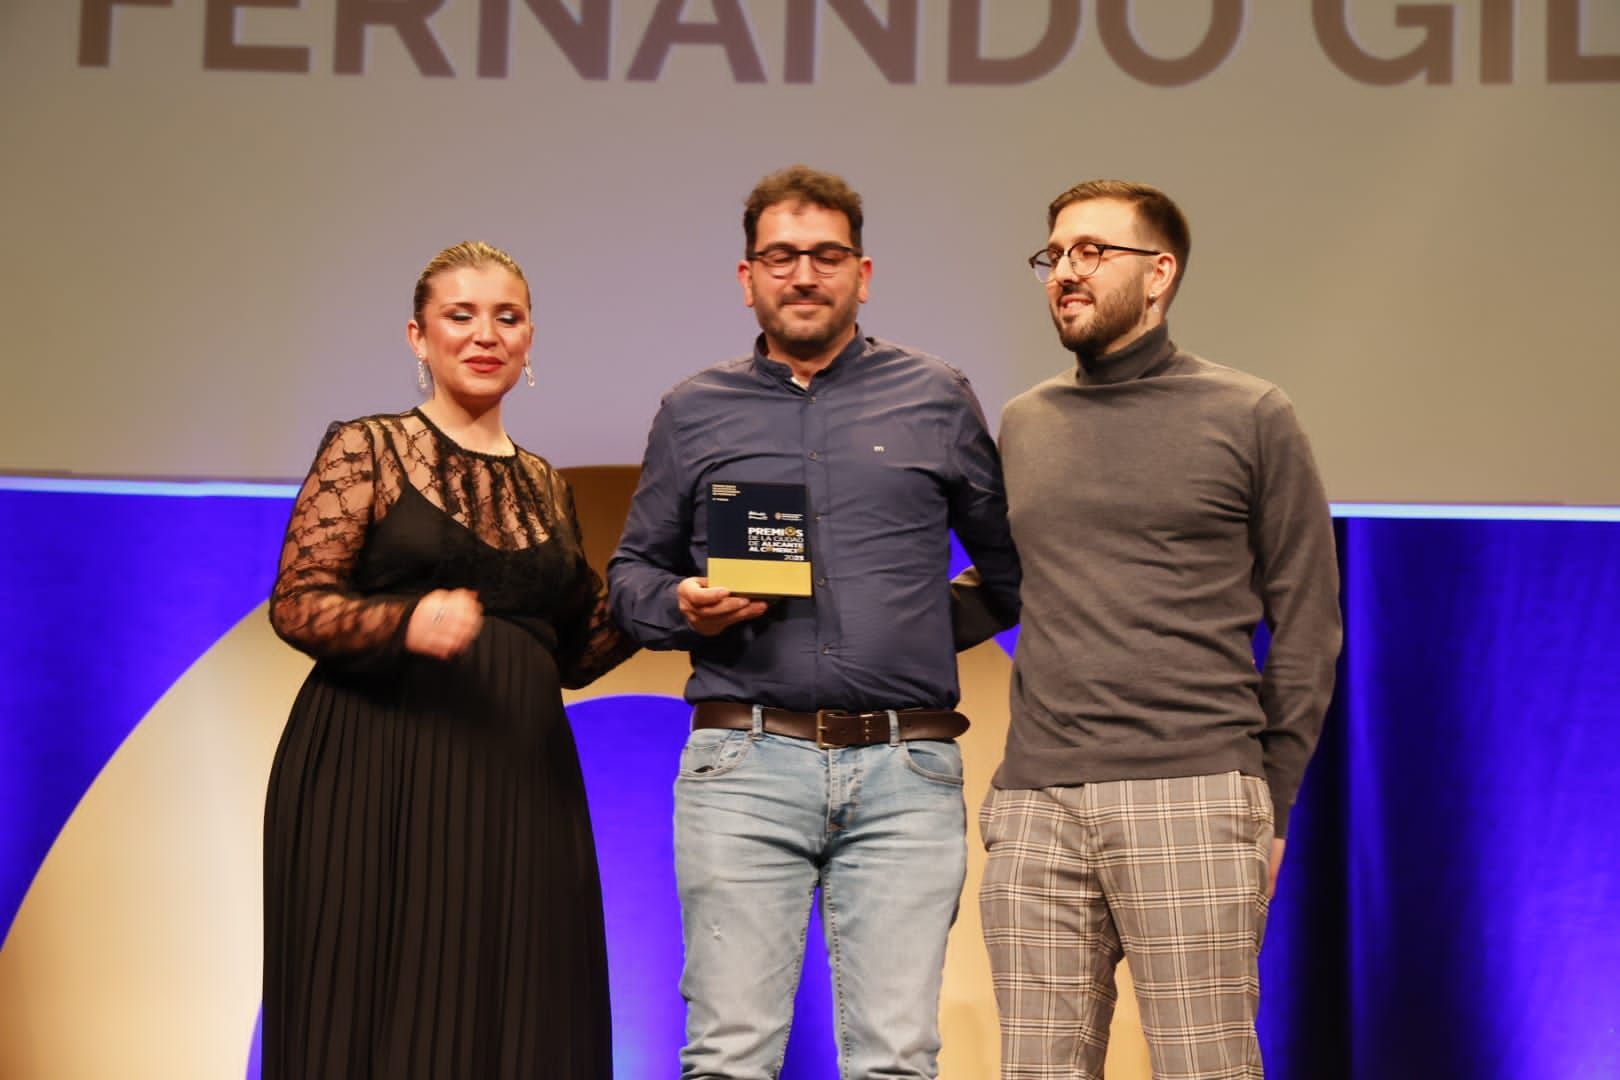 Los distintos ganadores de los premios al Comercio de Alicante